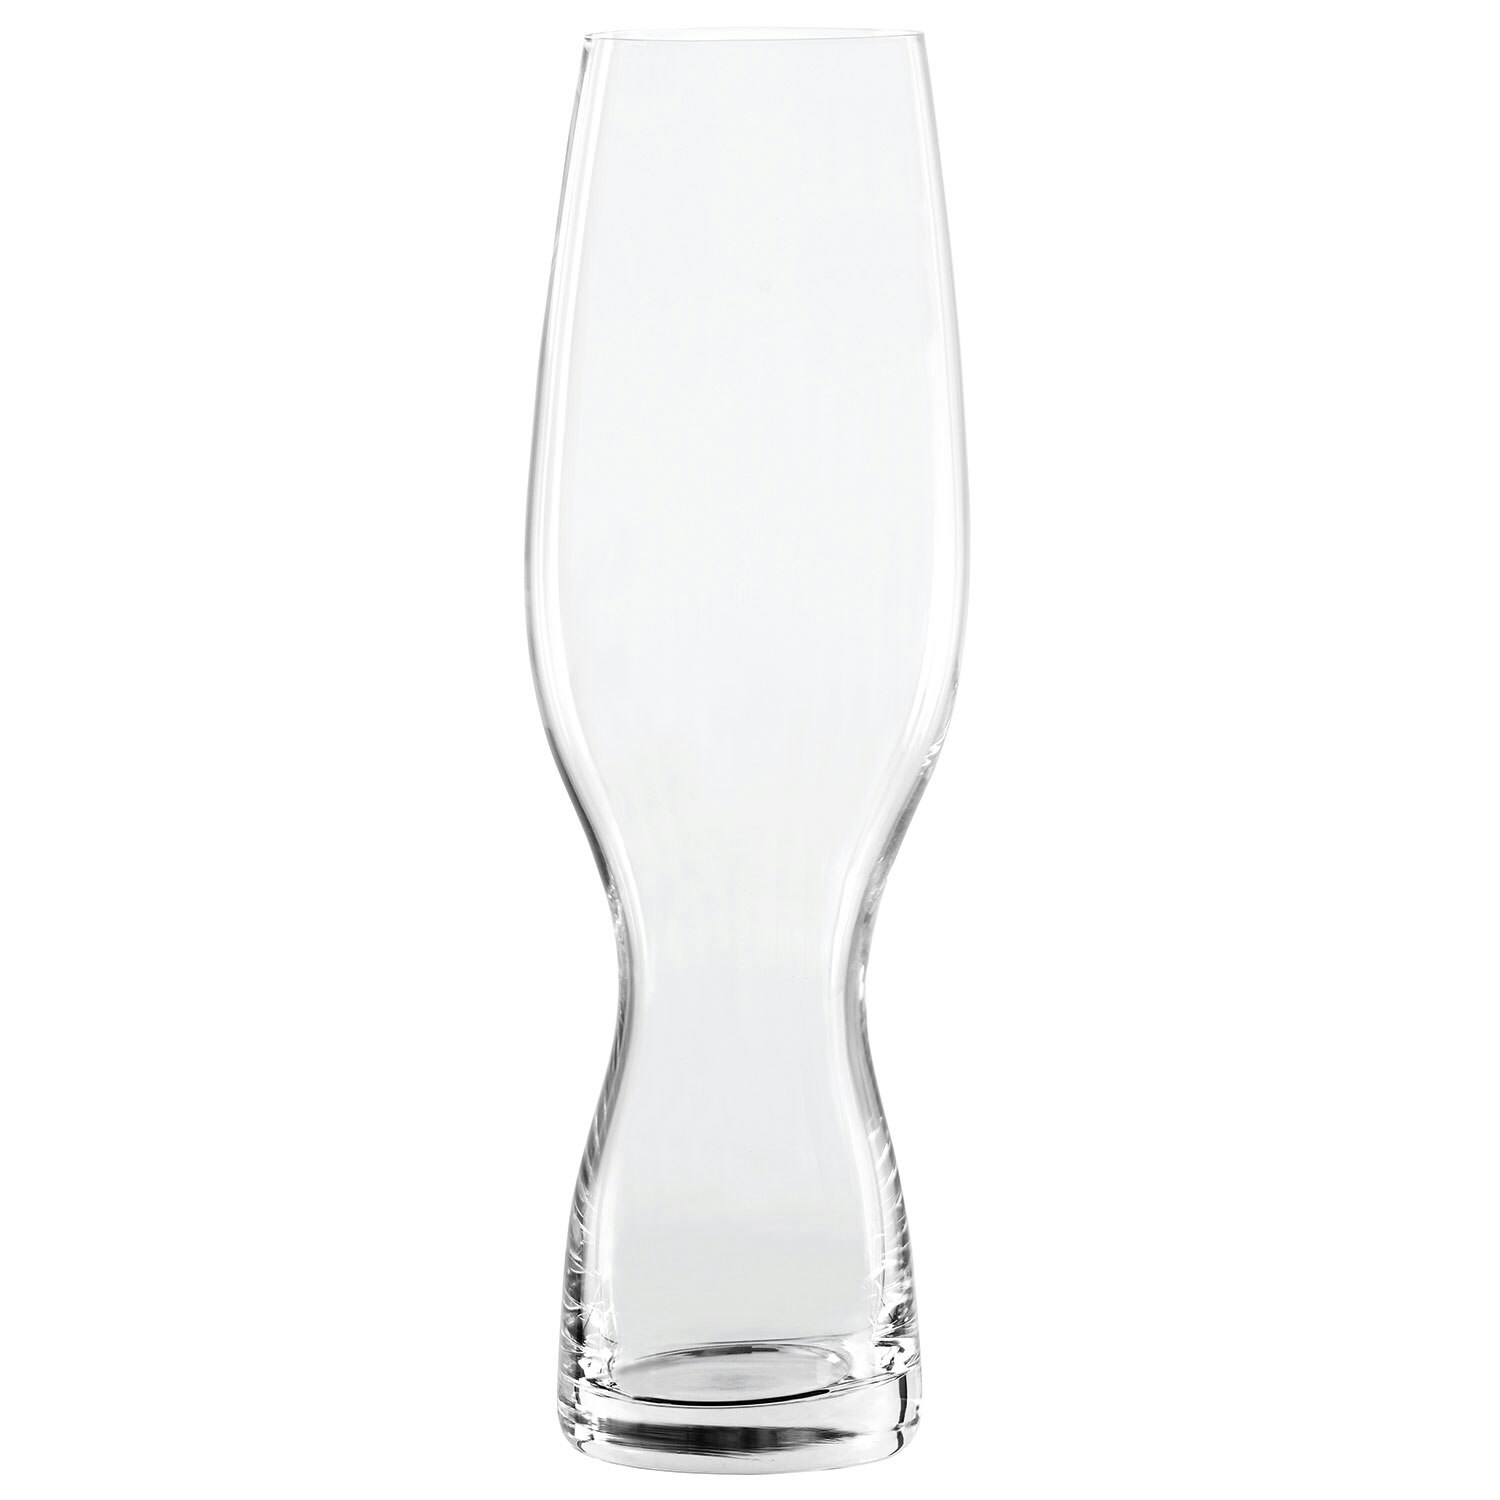 https://royaldesign.com/image/2/spiegelau-craft-beer-craft-pils-beer-glass-4-pack-0